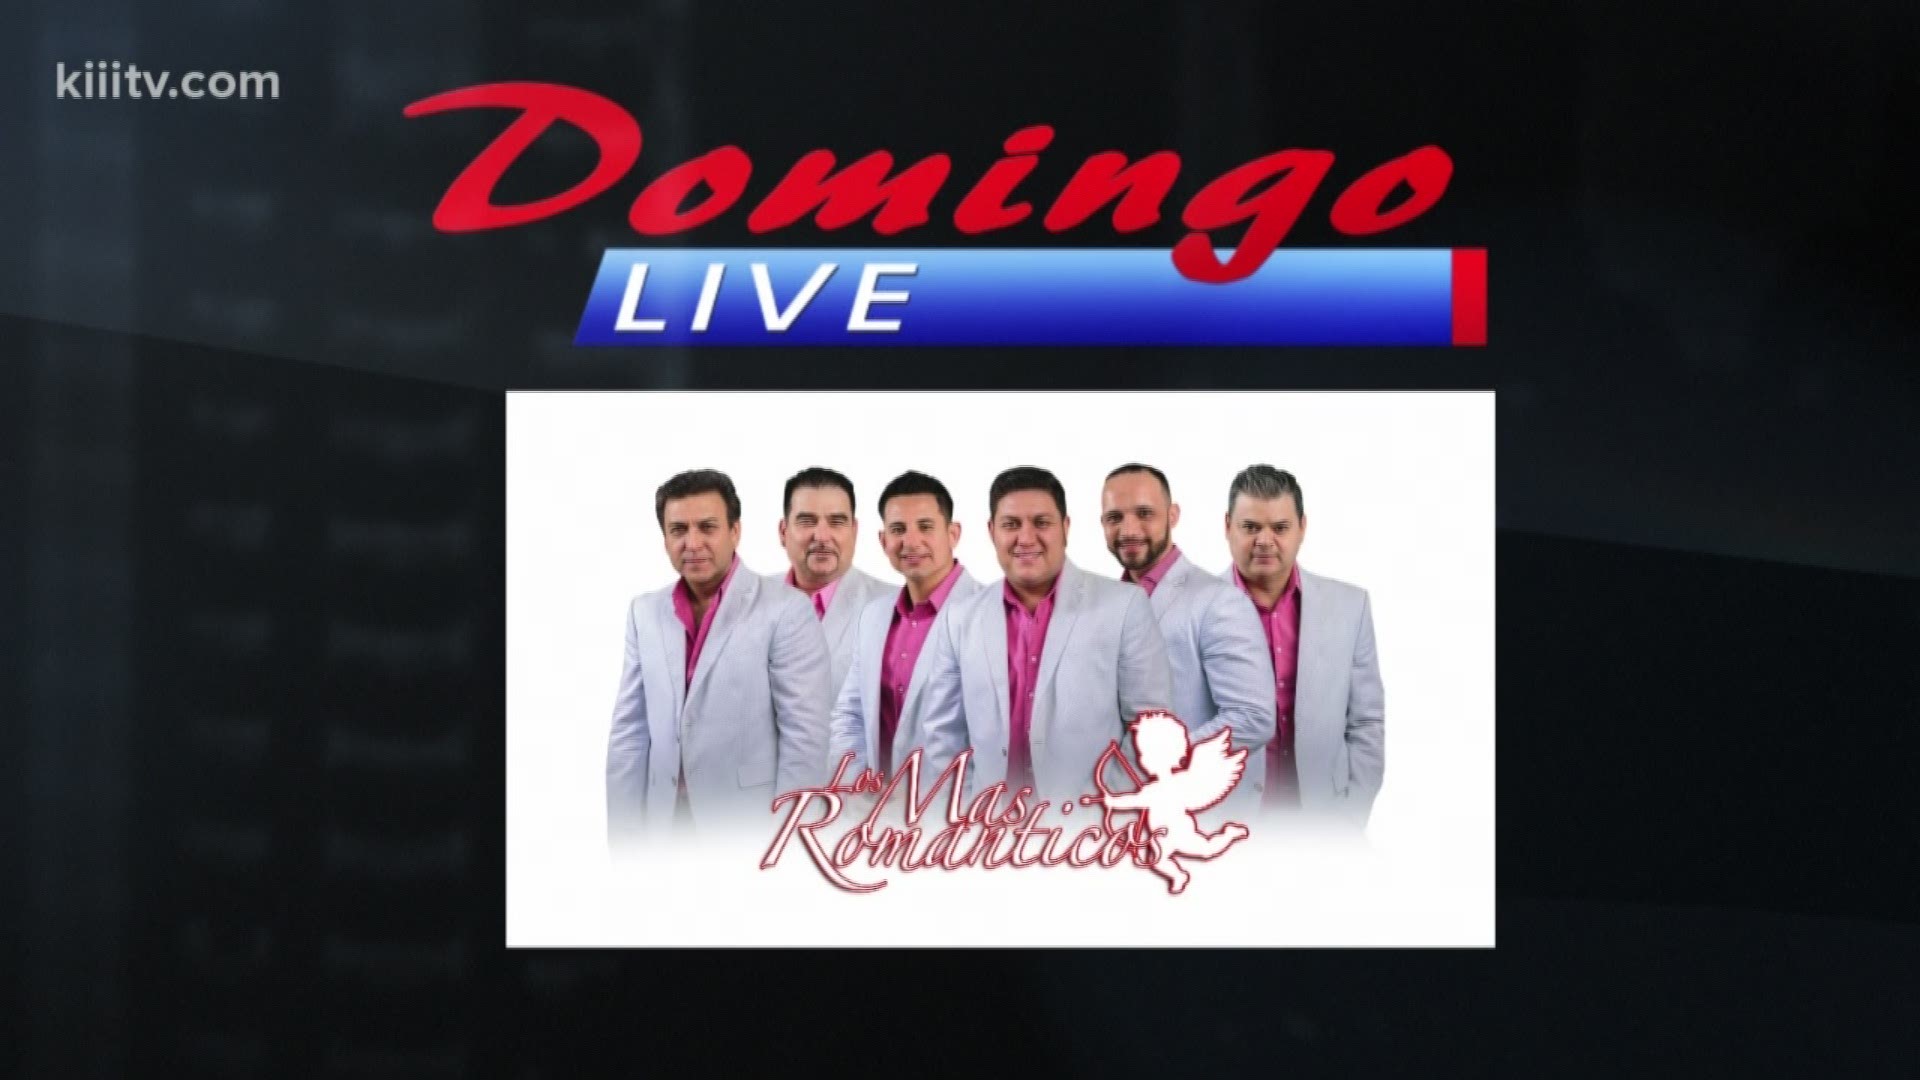 Los Mas Romanticos performing "Solo Converte" on Domingo Live.